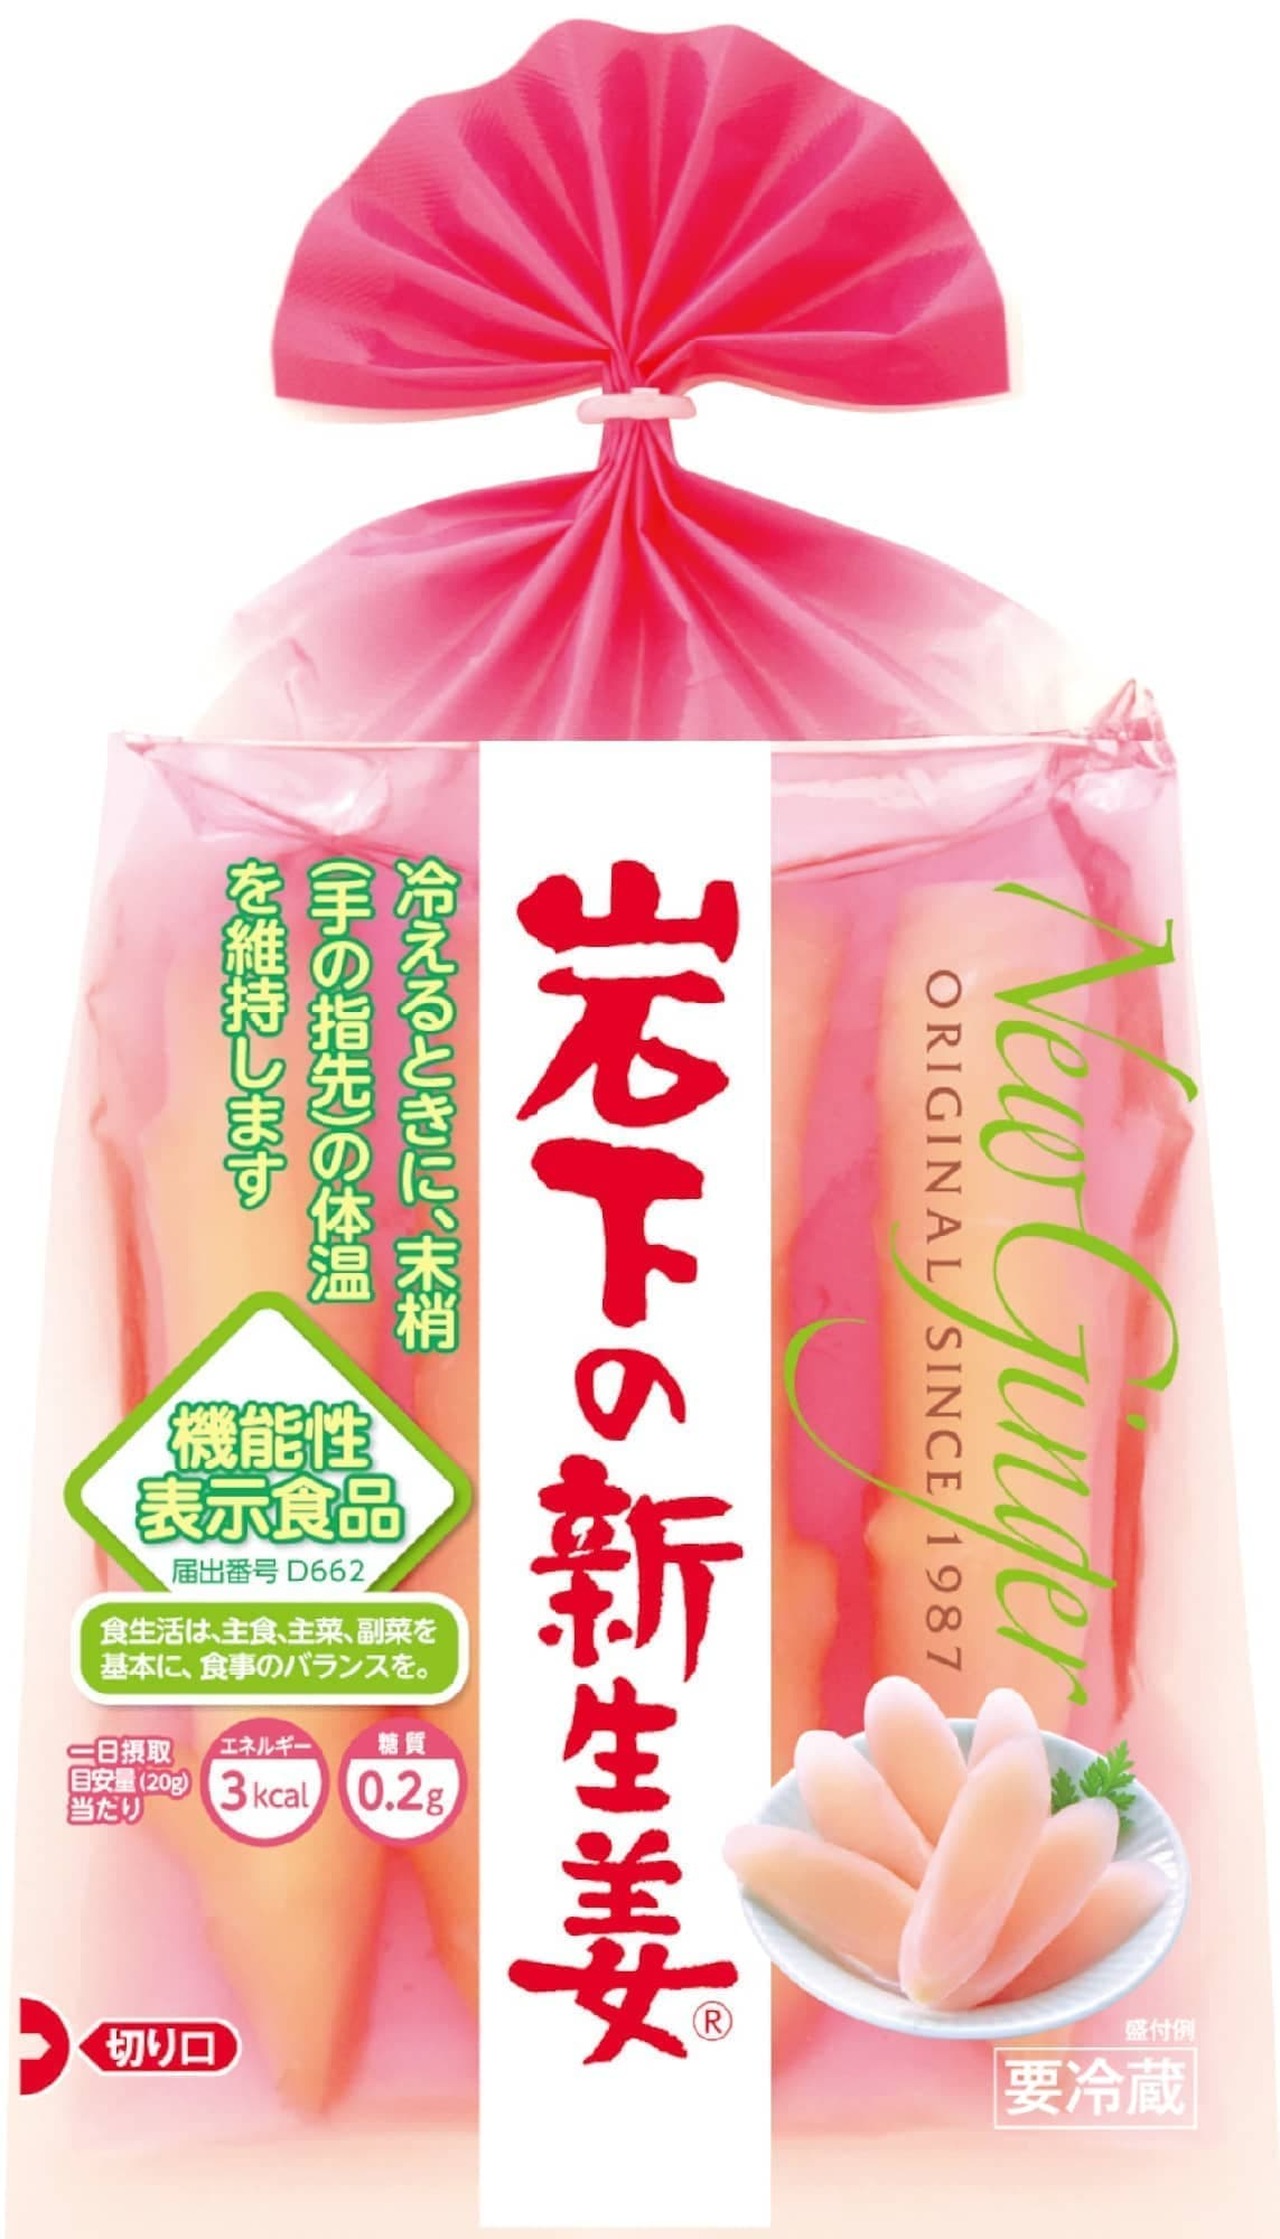 Tsukada Farm "Iwashita New Ginger Tartar Sauce Young Chicken Nanban Bento"